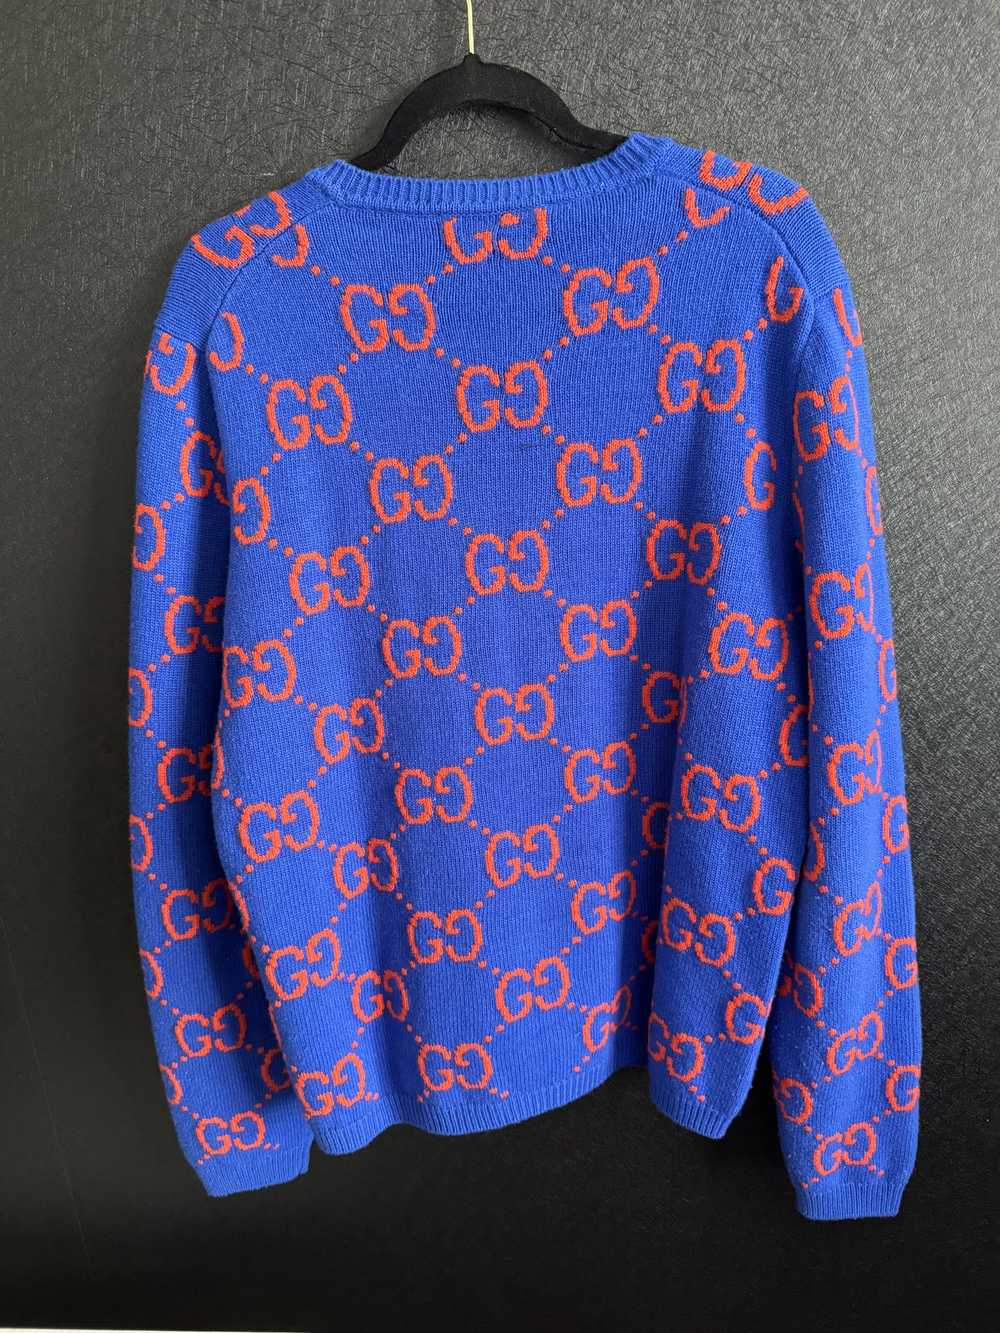 Gucci Gucci Sweater - image 1